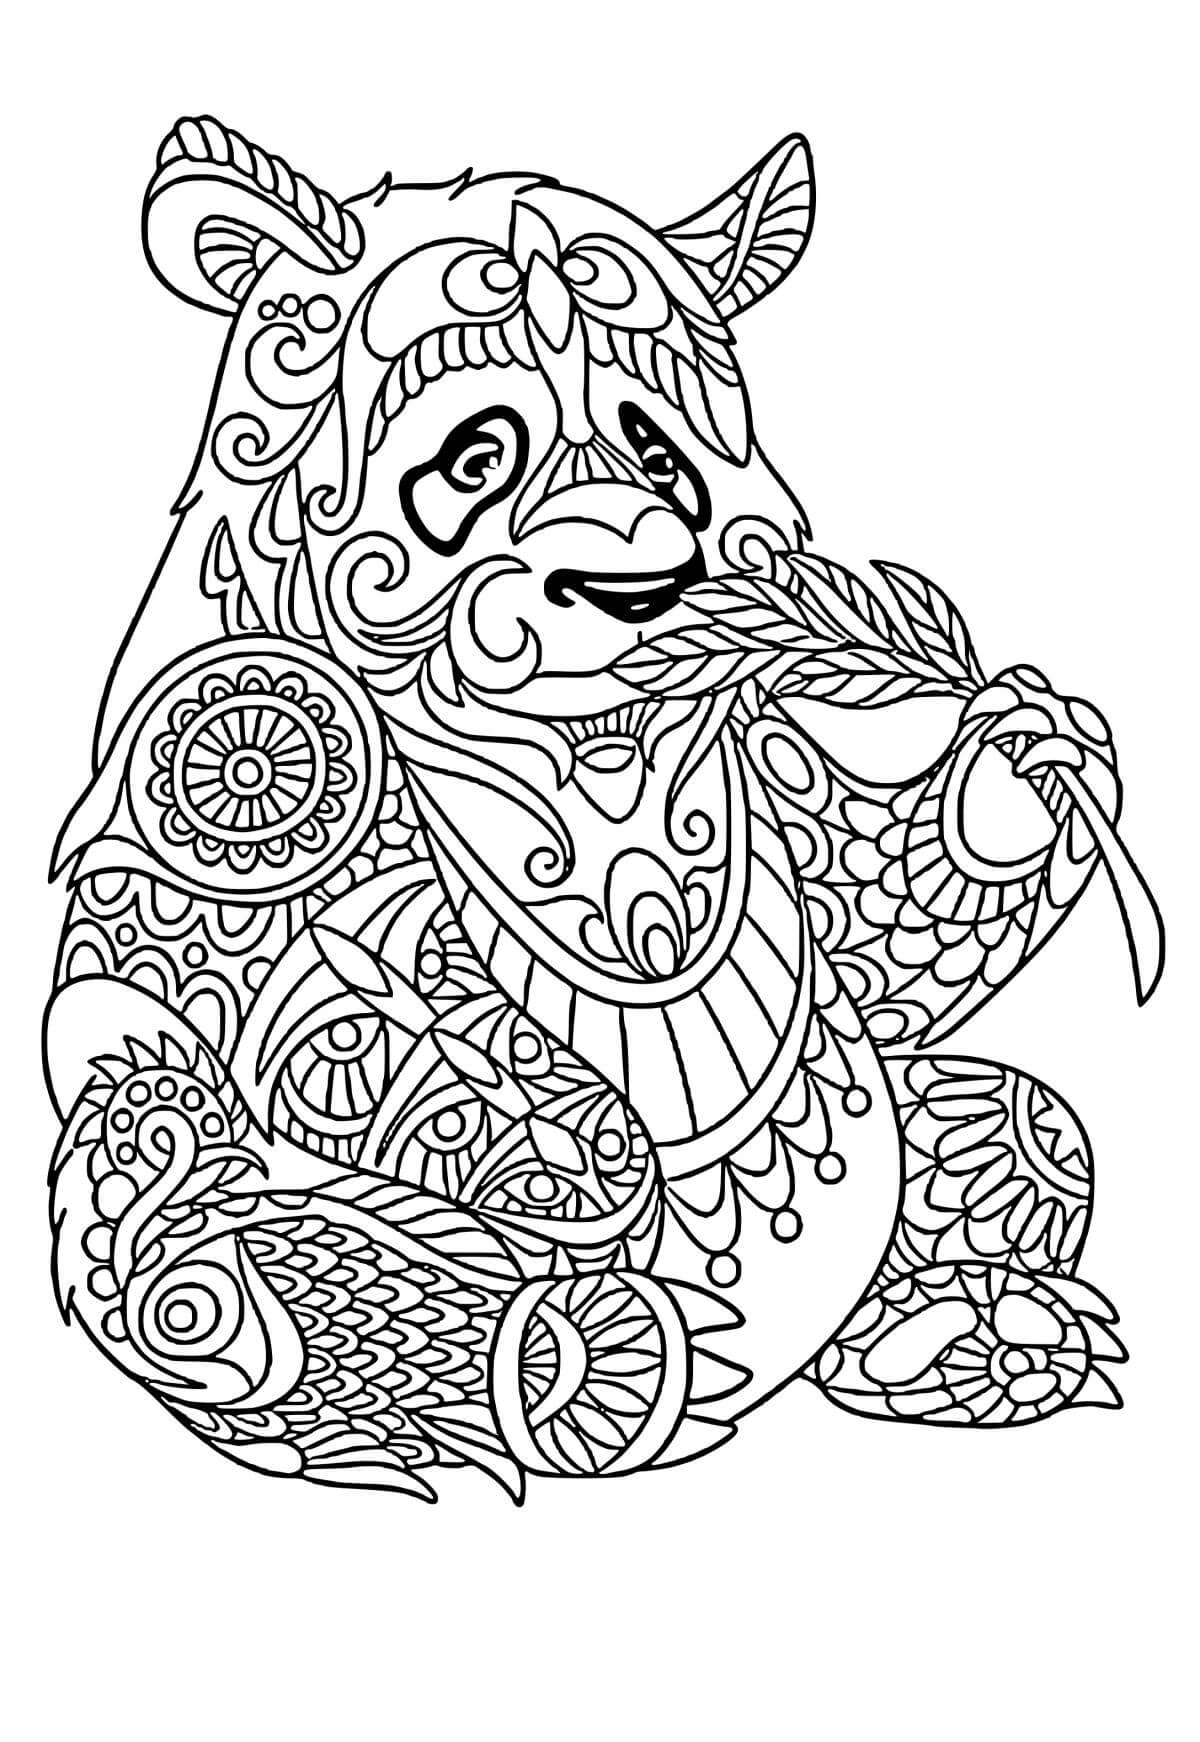 Mandala Panda Coloring Page – Sheet 7 Mandala